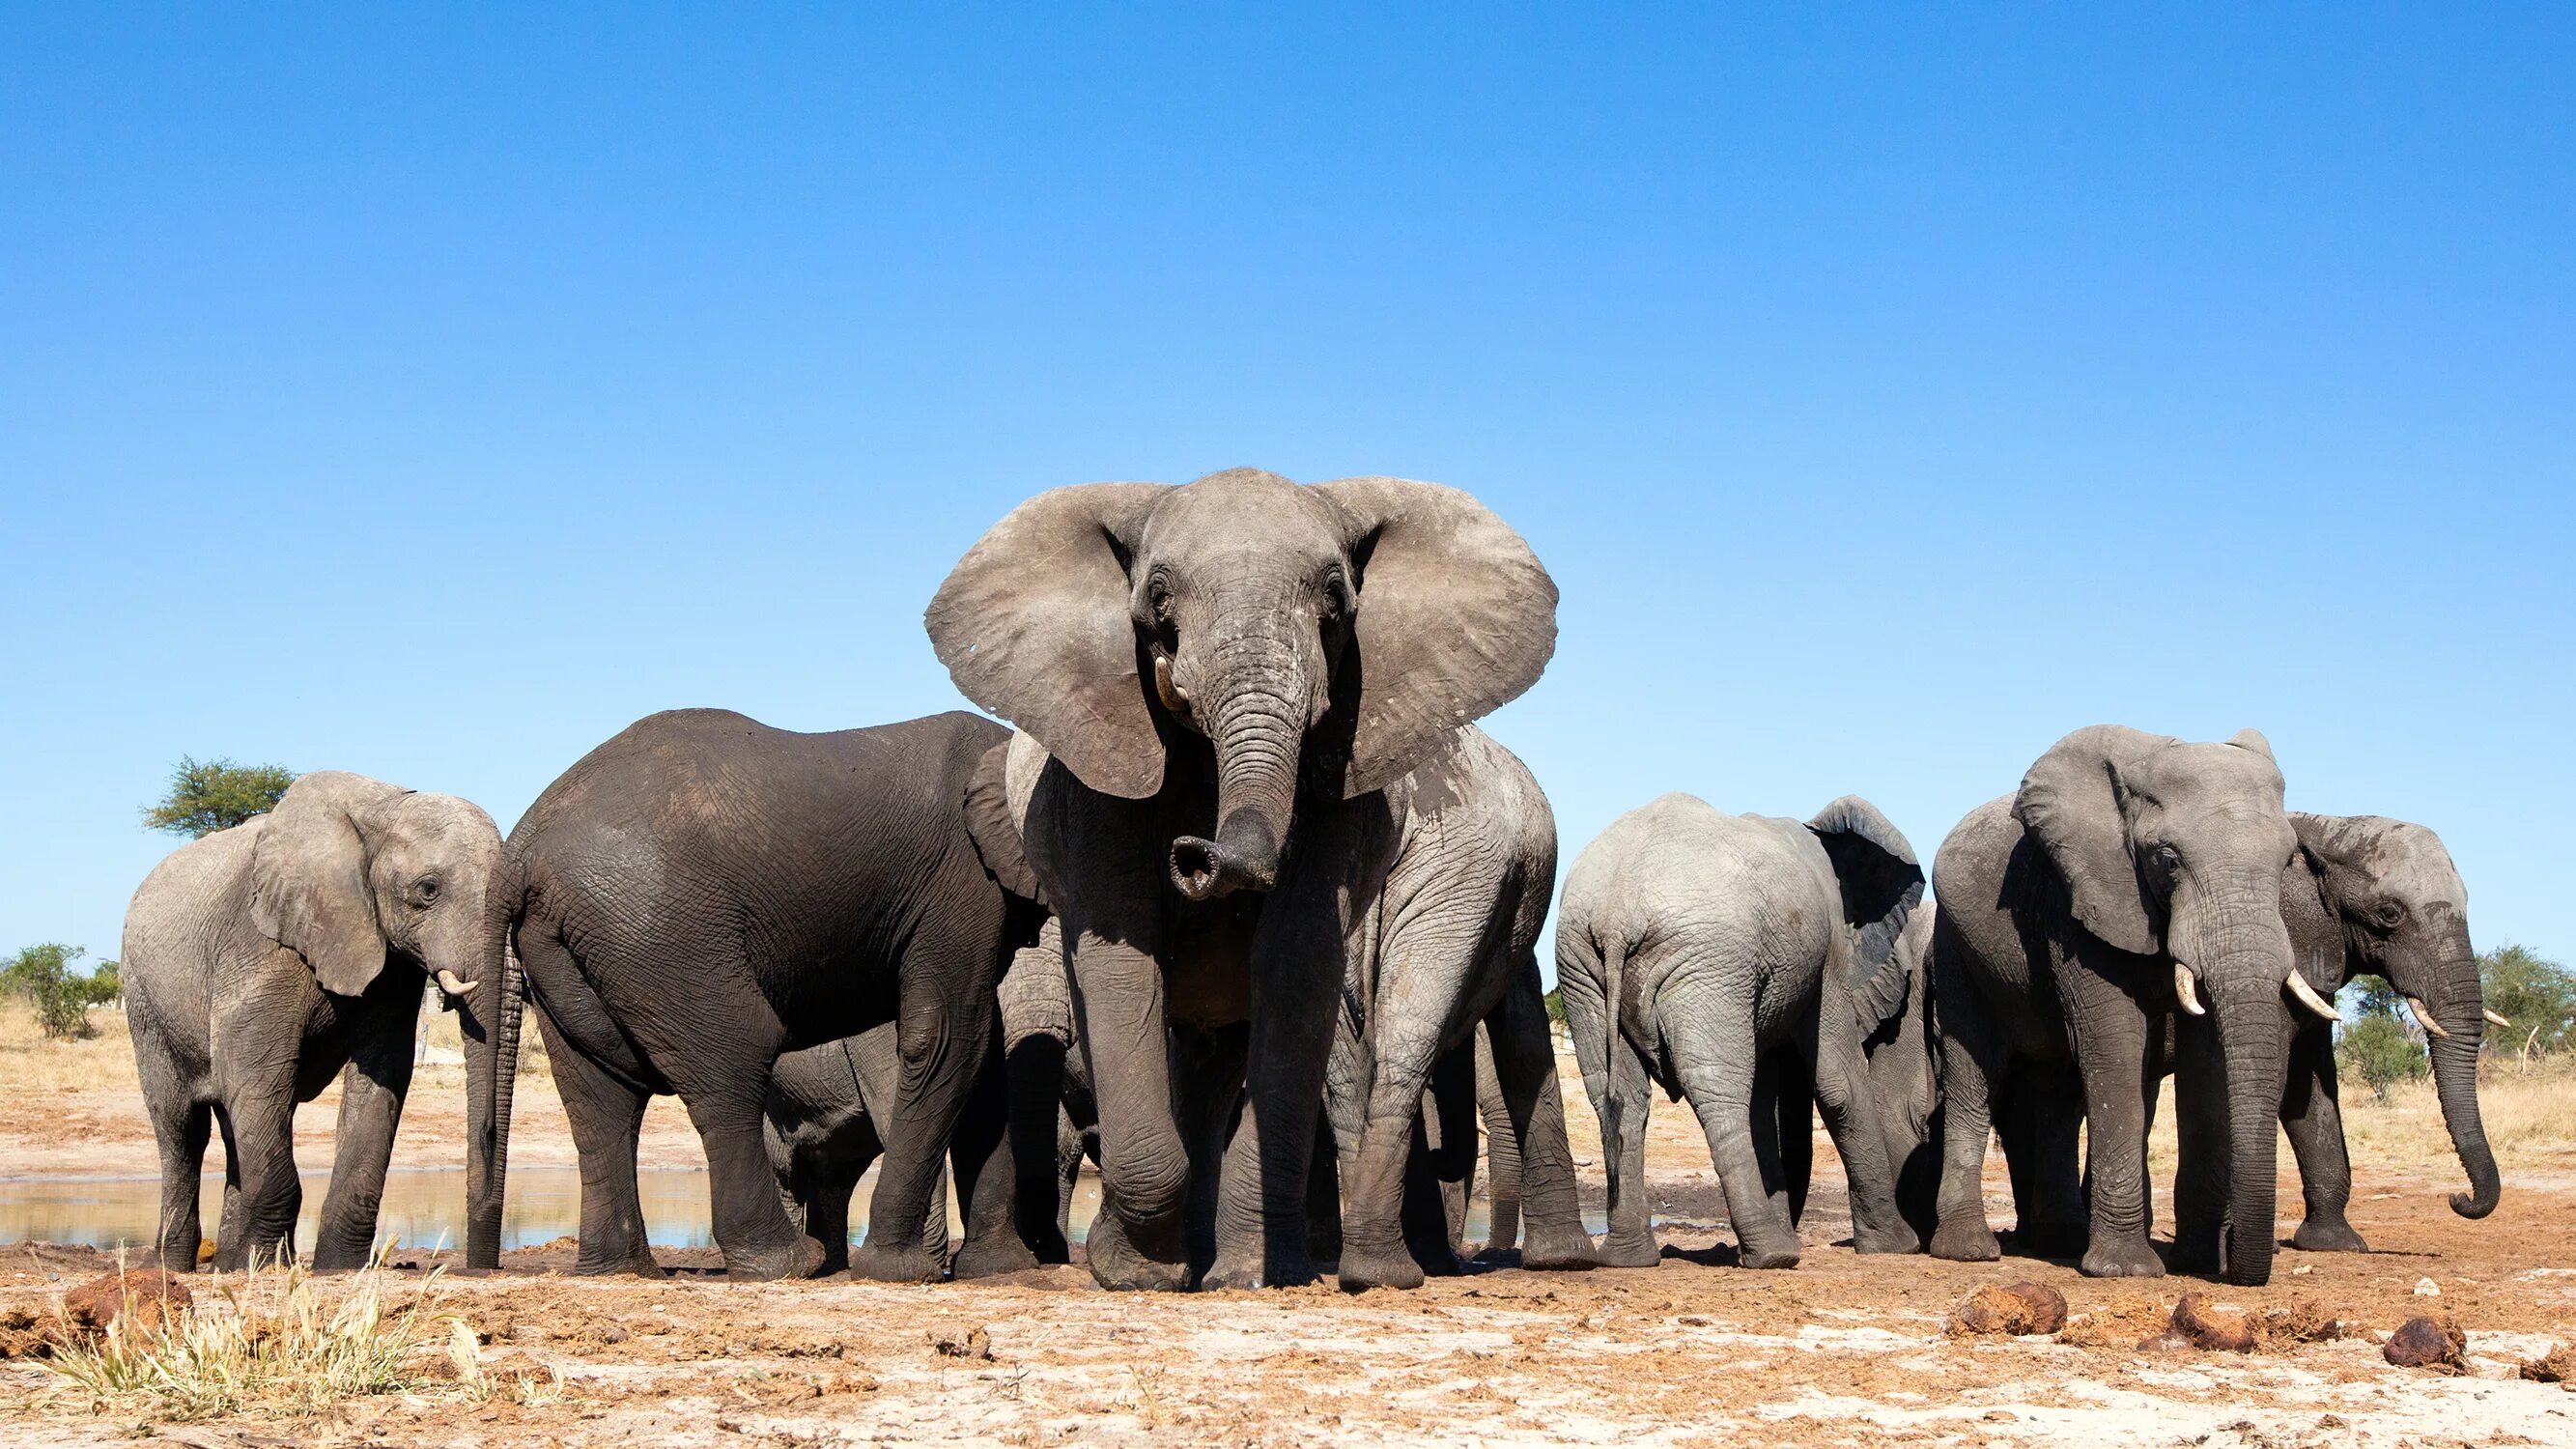 Good africa. Хванге национальный парк. Слоны Зимбабве. Популяция слонов. Слон сафари.